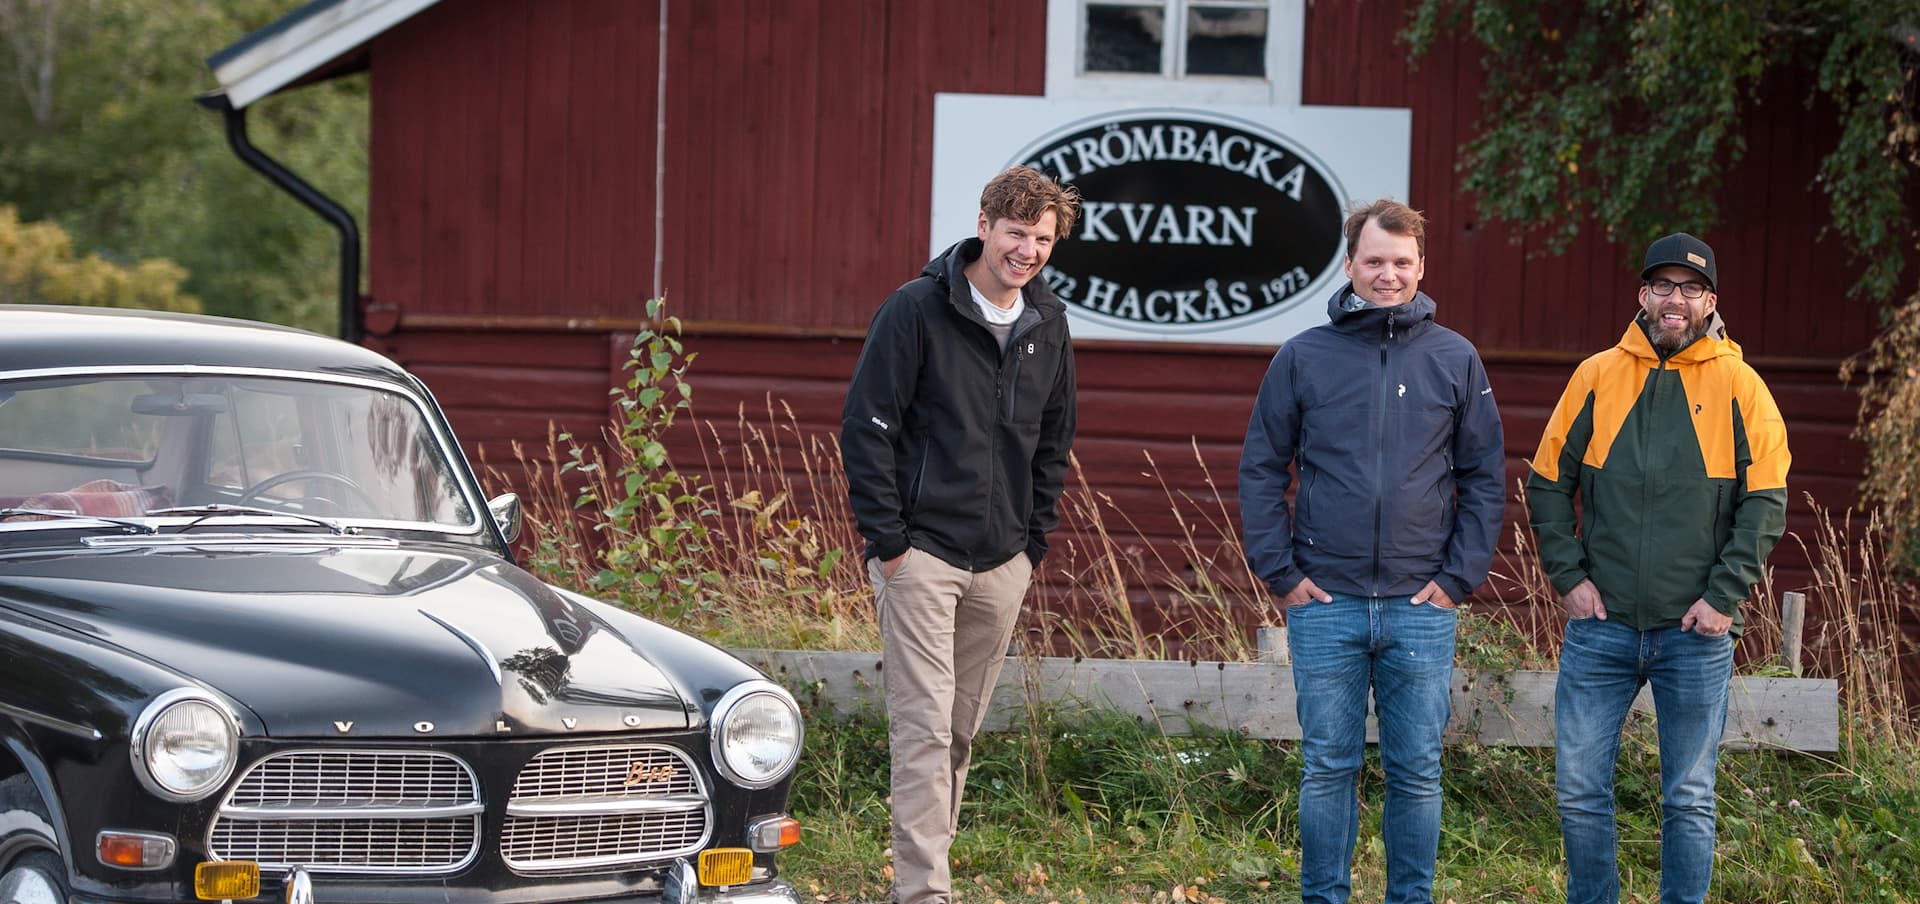 Strömbacka Kvarns nya ägare. Från vänster: Pär Ivarsson, Jimmy Segersten, Johan Eliasson
Foto: Henrik Åhlund